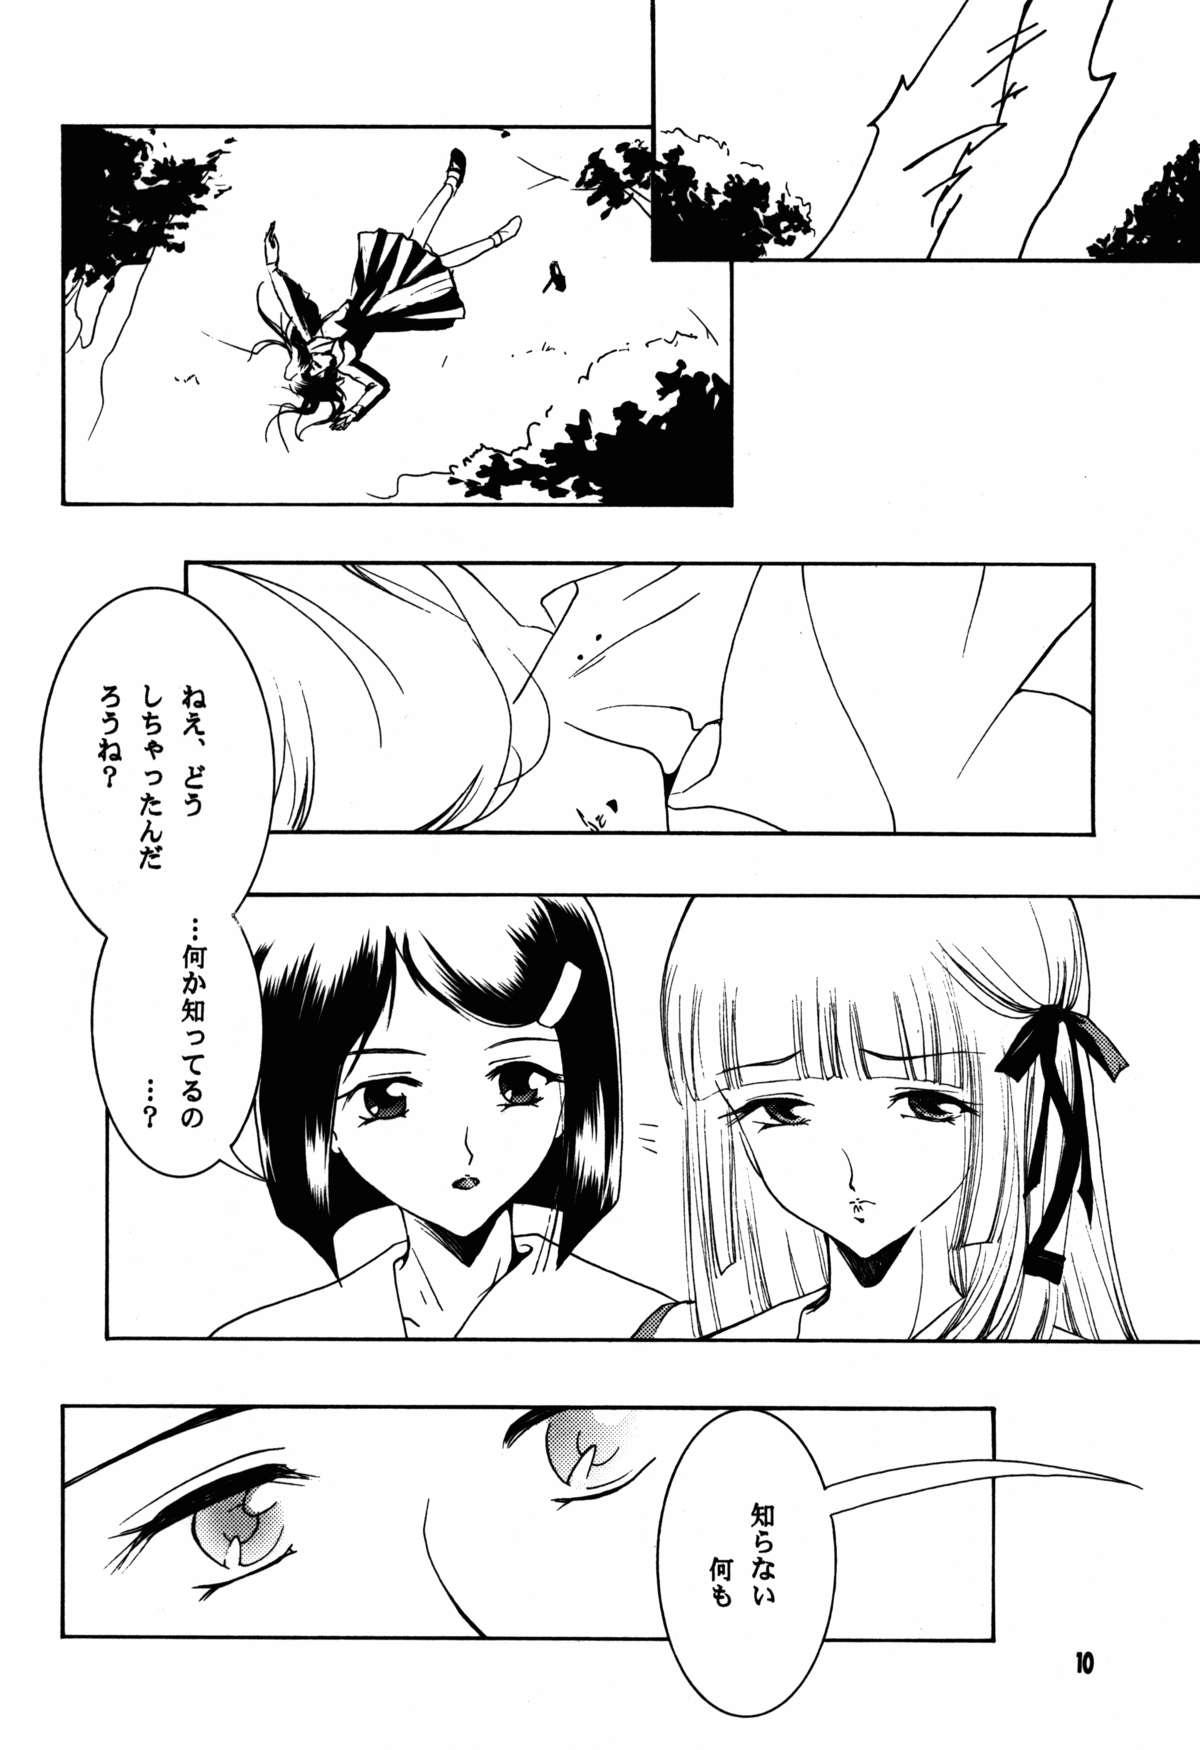 Punish Hadashi no VAMPIRE 17 - Vampire princess miyu Porno - Page 10